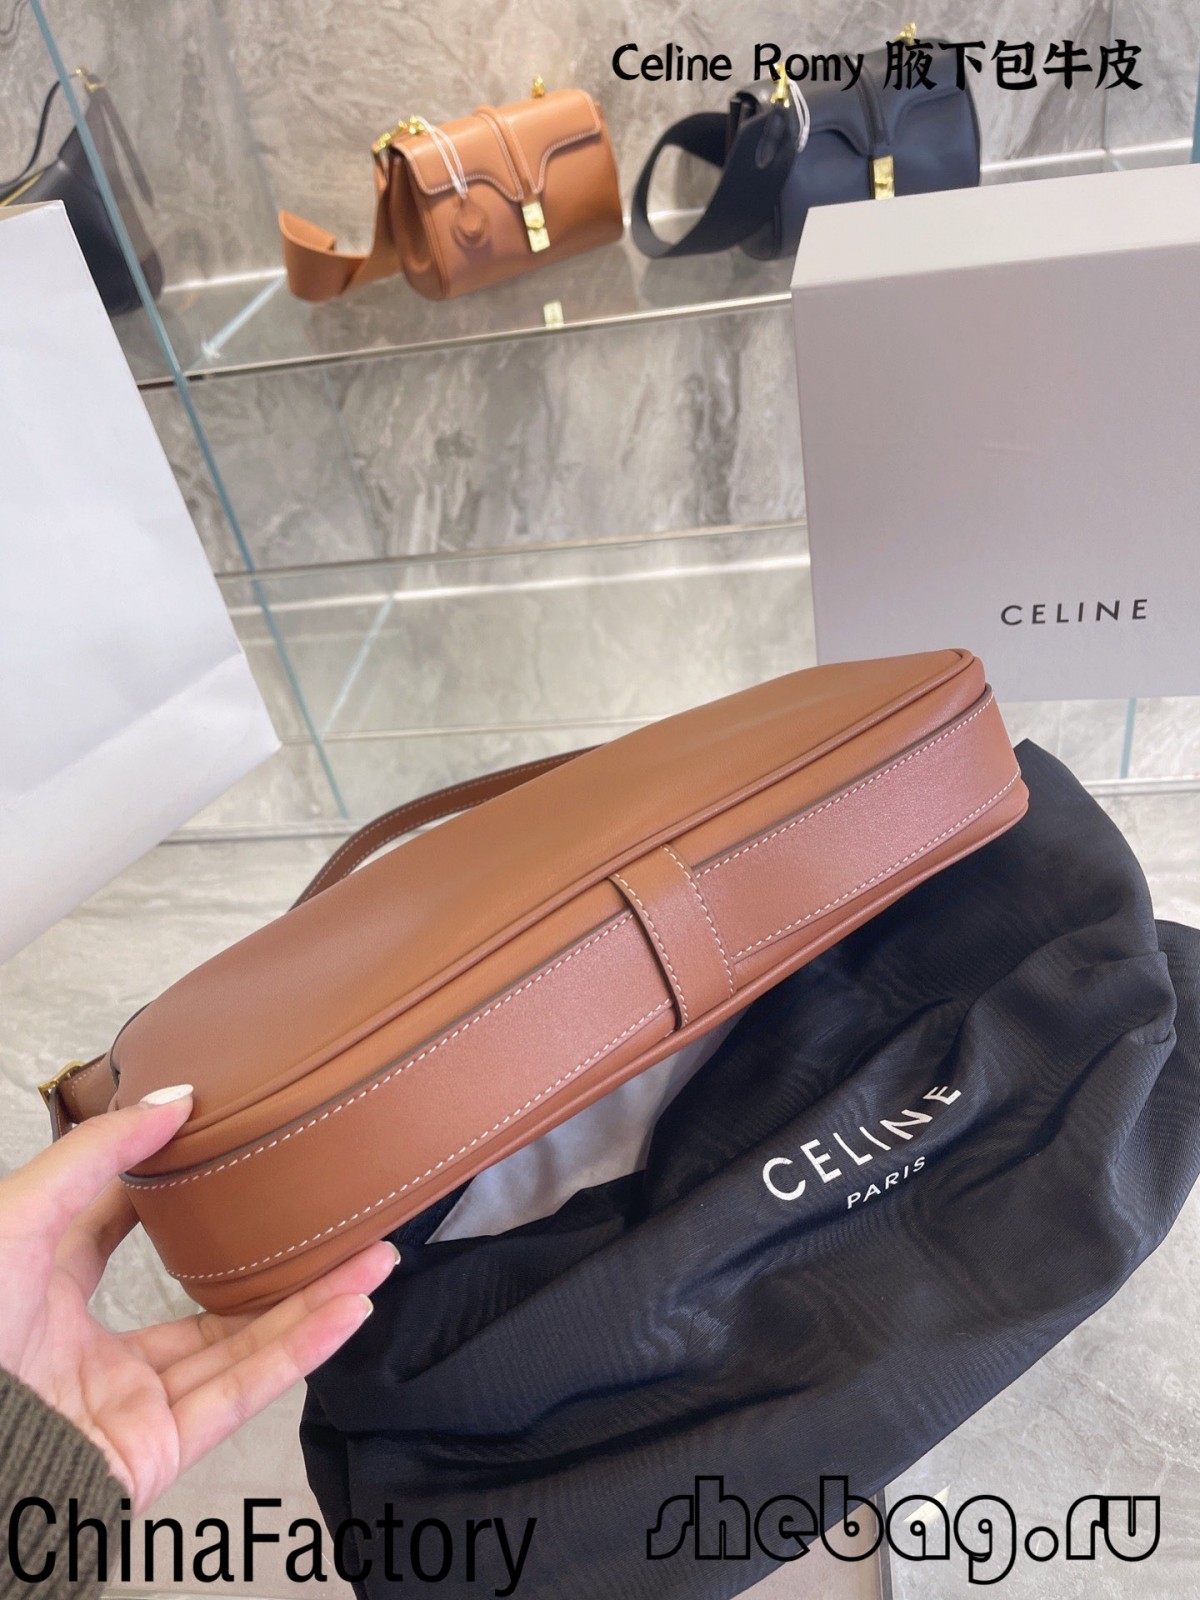 Nā hōʻike manaʻo o nā ʻeke celine maikaʻi loa: Celine Romy (2022 edition)-Best Quality Fake Louis Vuitton Bag Online Store, Replica designer bag ru